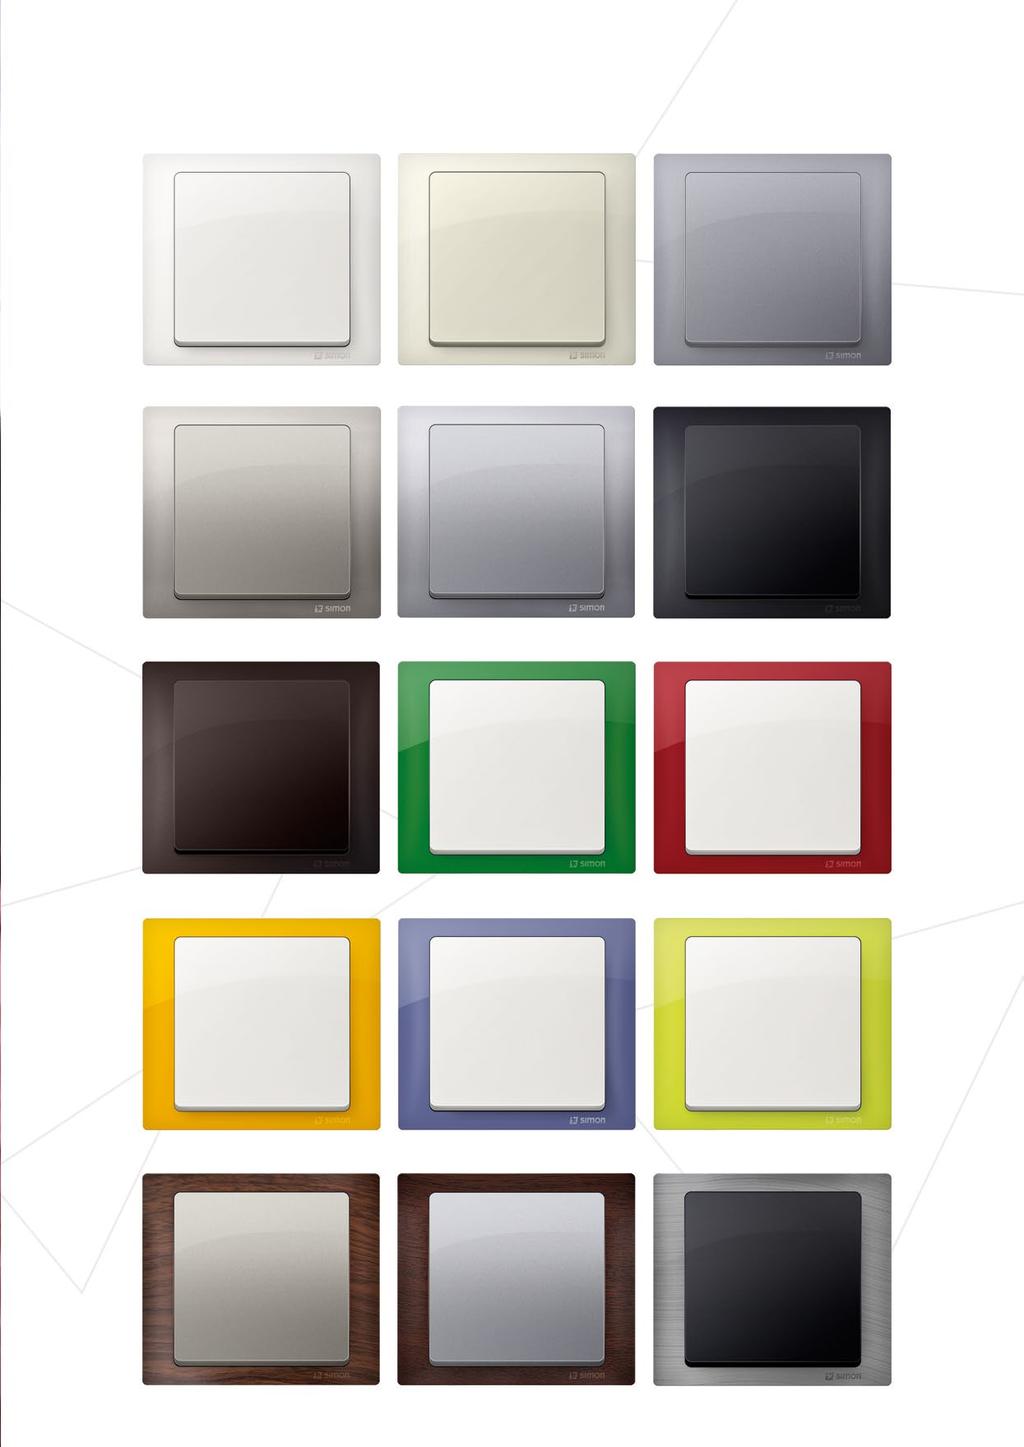 Máte na výběr 15 BAREV RÁMEČKŮ 7 BAREV MODULŮ Barva rámečku: bílá Barva modulu: bílá Barva rámečku: béžová Barva modulu: béžová Barva rámečku: ocel inox Barva modulu: ocel inox Barva rámečku: